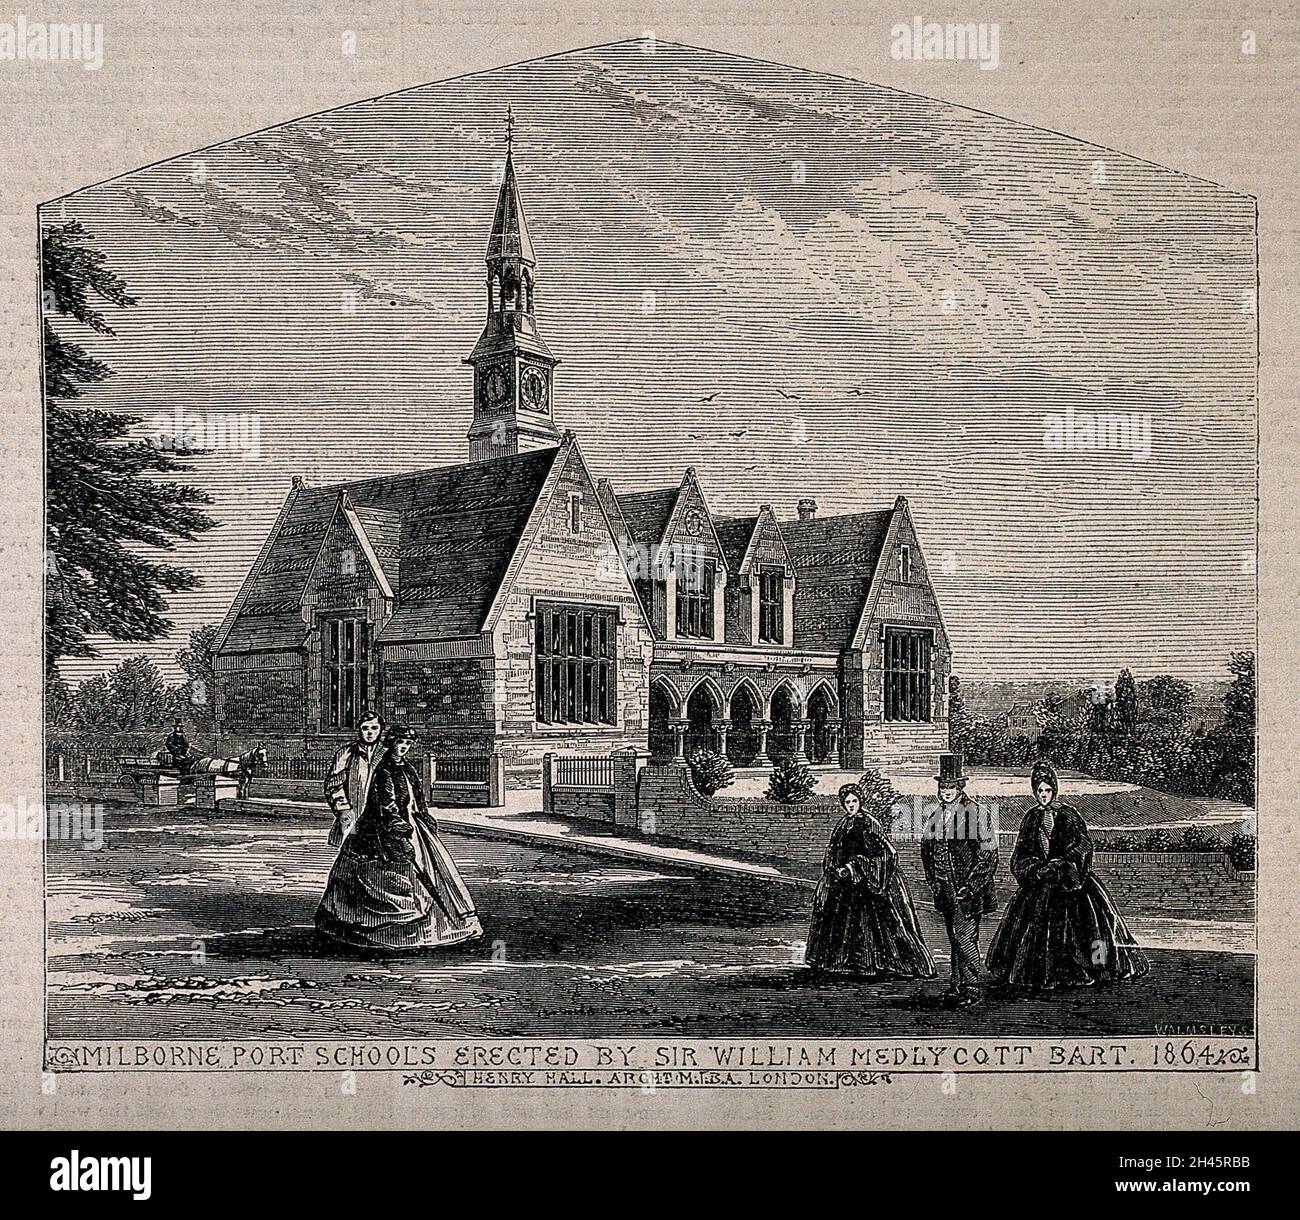 Milborne Port Schools, Milborne Port, Somerset. Incisione in legno di Walmsley, 1864, dopo H. Hall. Foto Stock